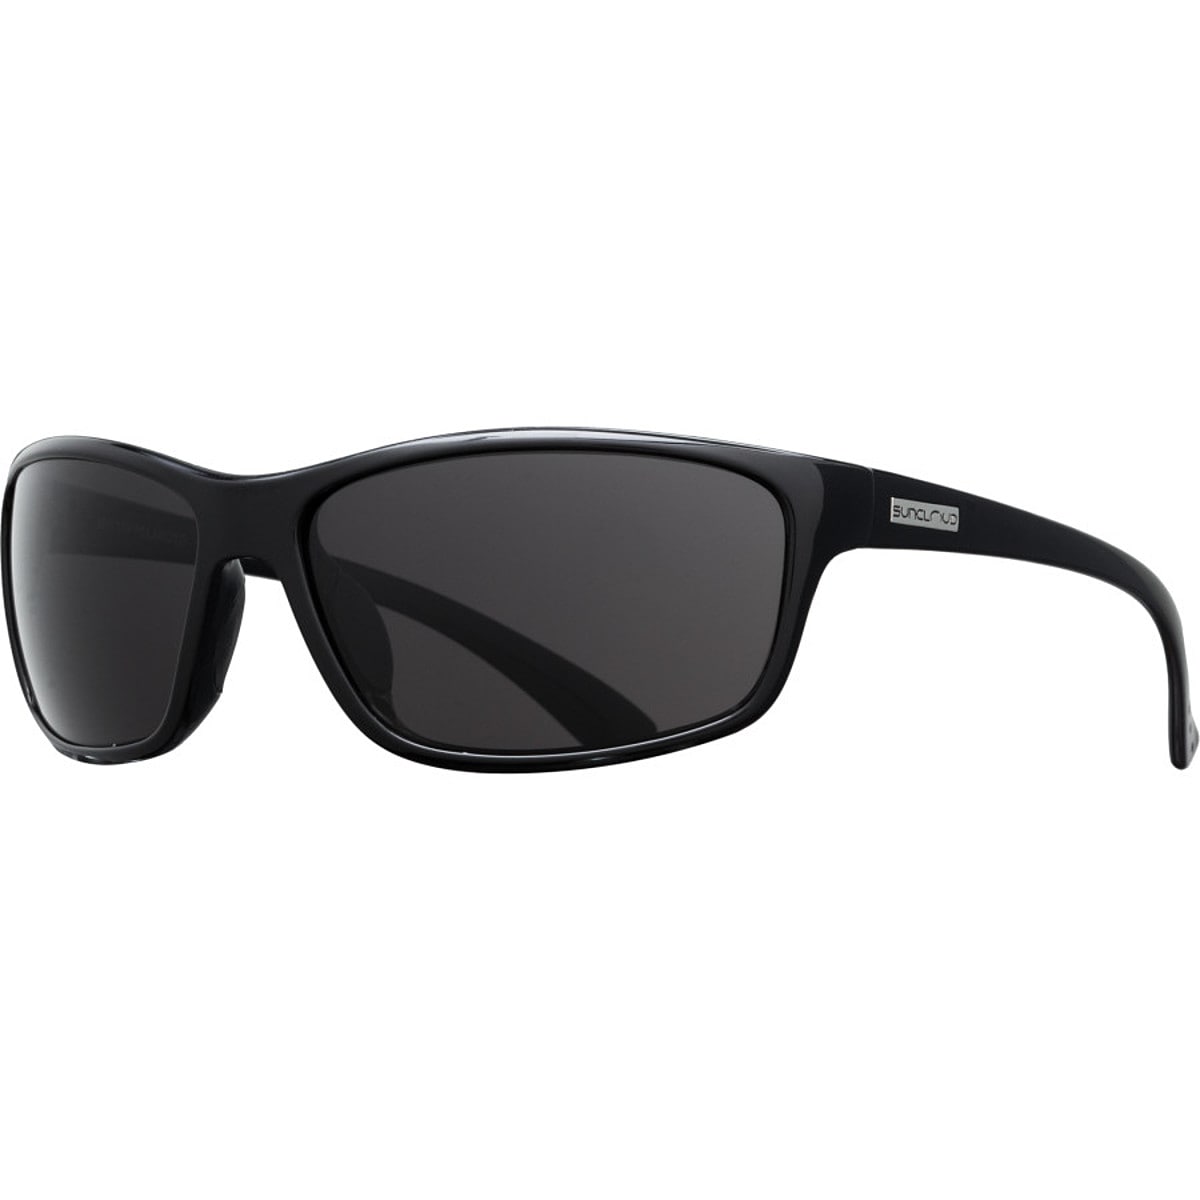 Поляризованные солнцезащитные очки sentry Suncloud Polarized Optics, цвет black/gray очки солнцезащитные stylemark polarized l1505d